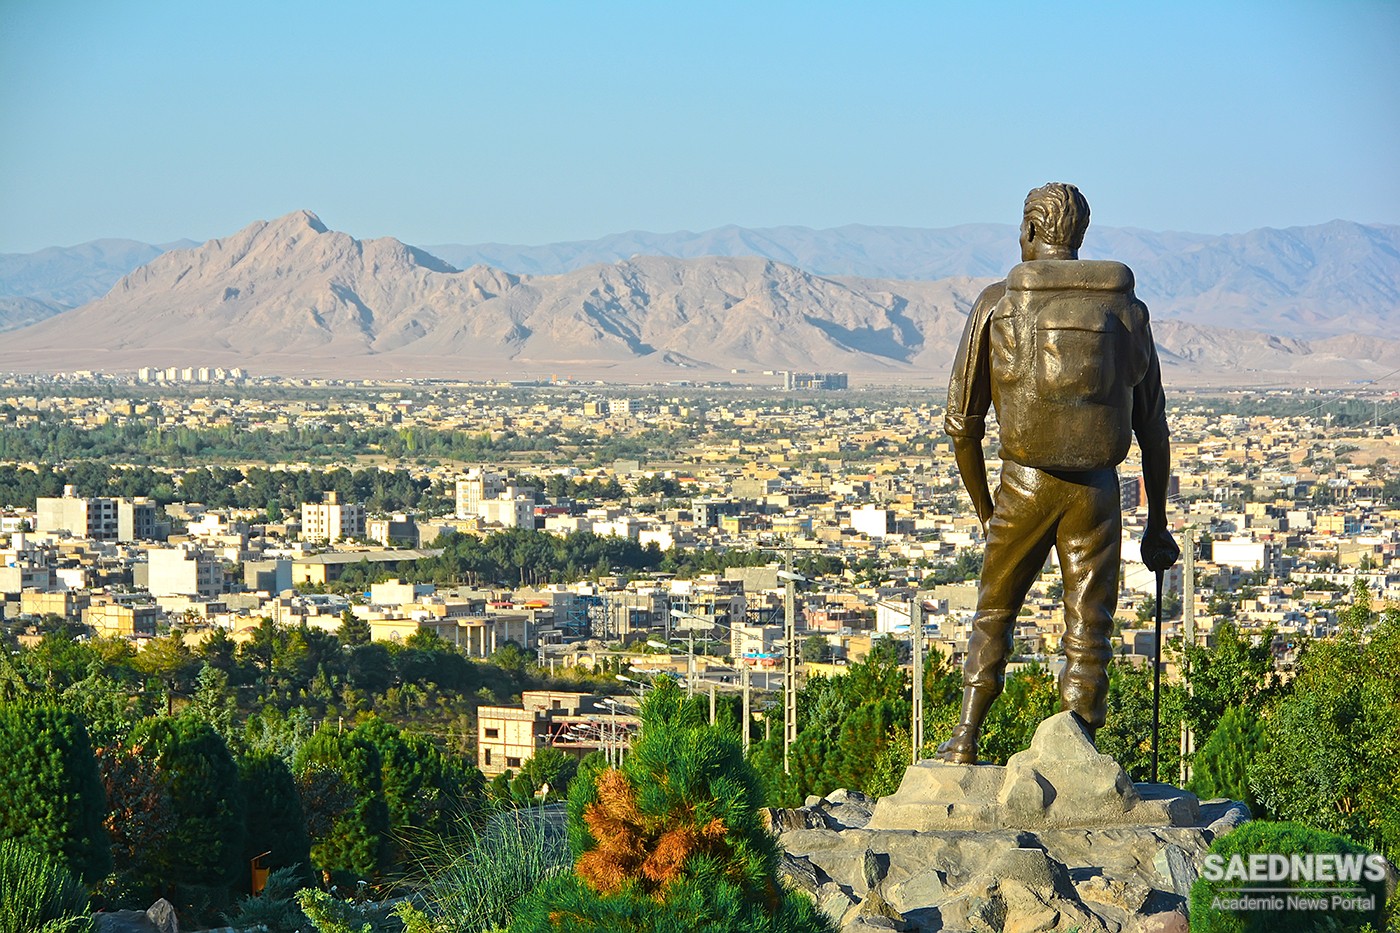 Torbat-e Heydariye the Capital of Persian Silk